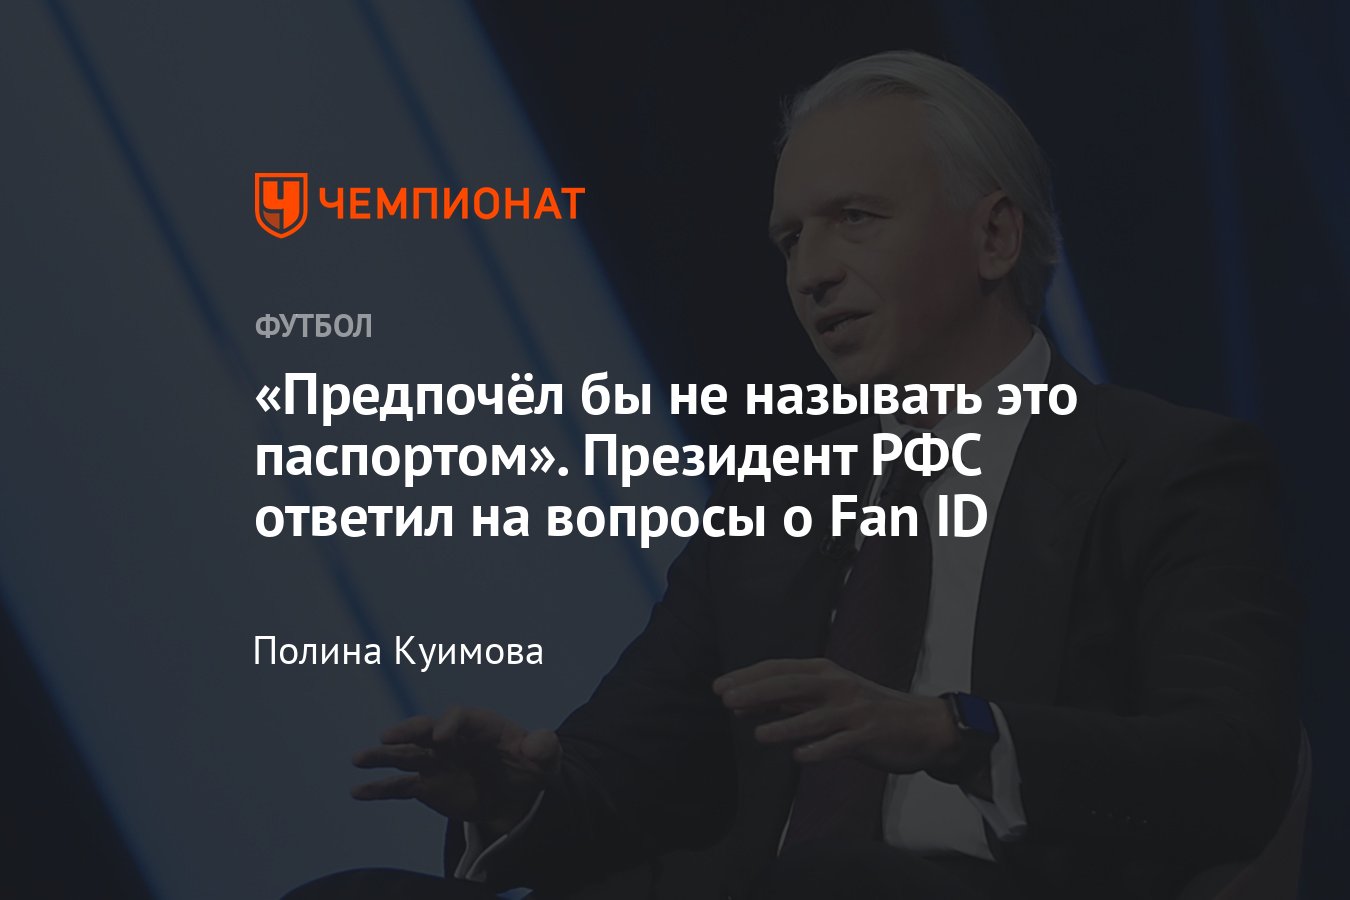 «Предпочёл бы не называть это паспортом». Президент РФС ответил на вопросы о Fan ID thumbnail